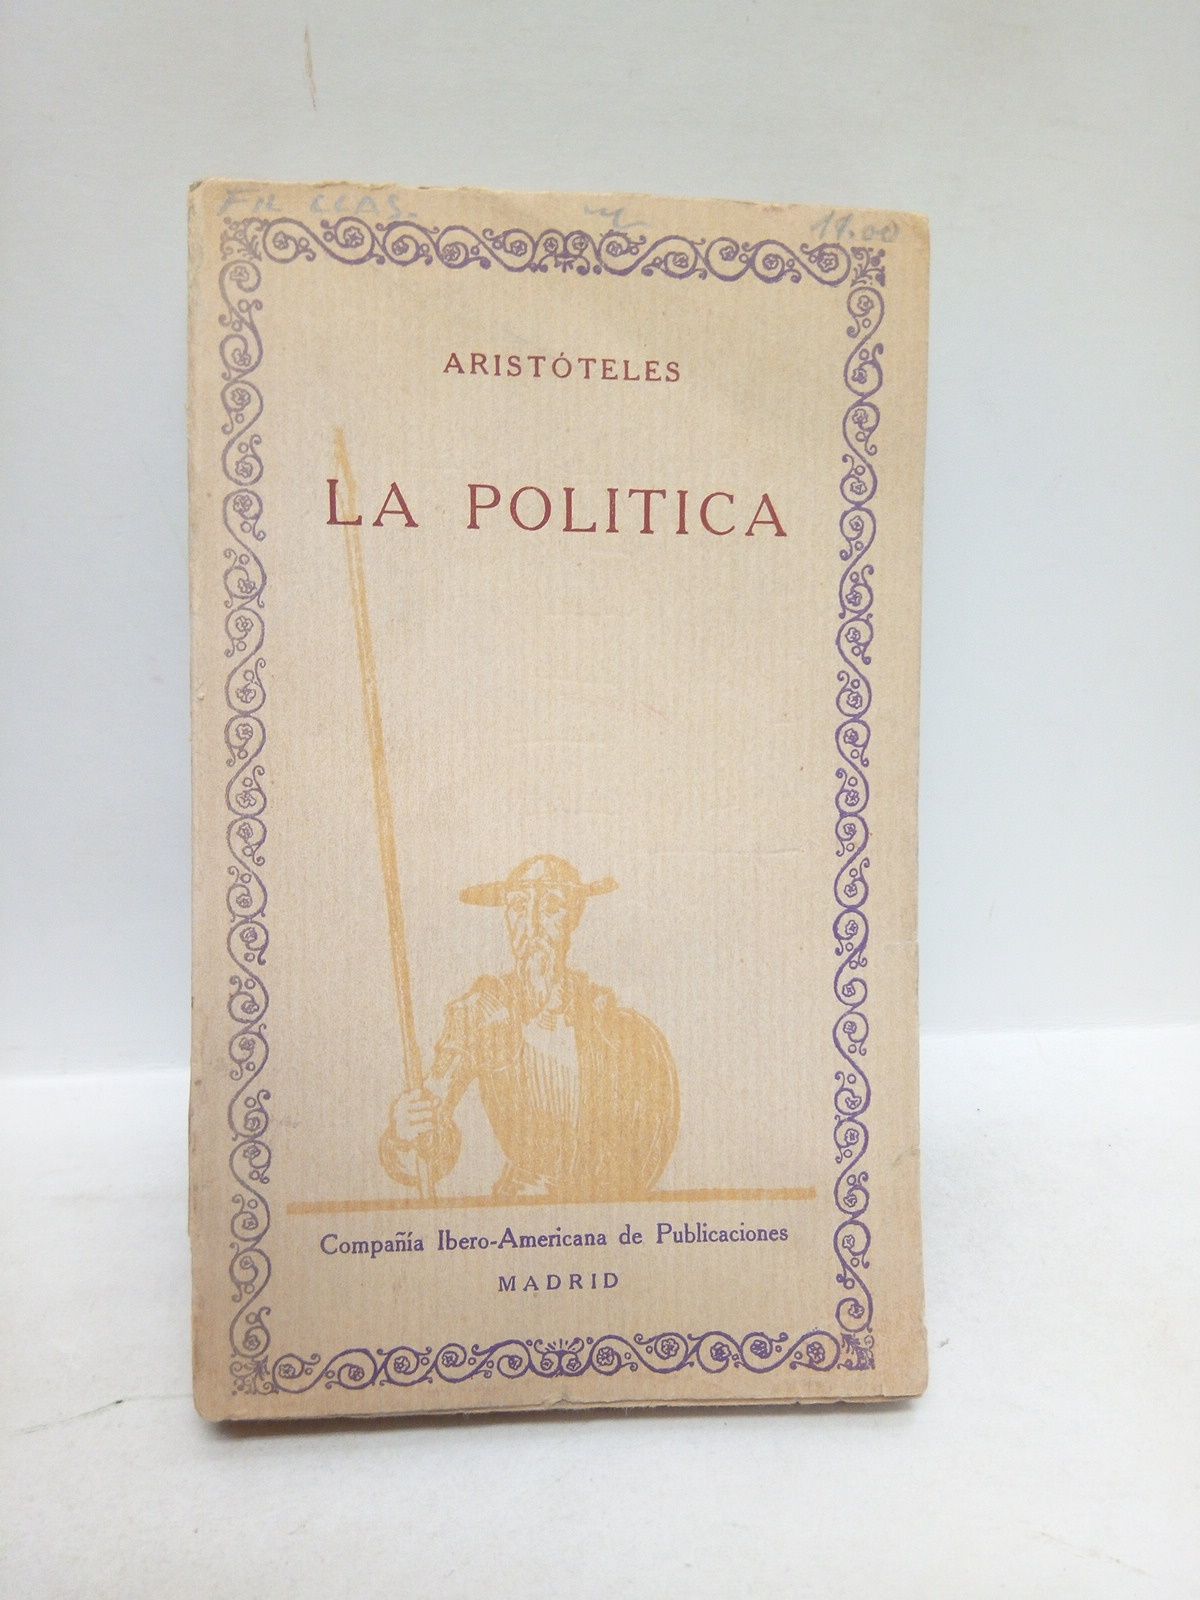 ARISTOTELES - La Poltica /  Traduc. de Pedro Simn Abril